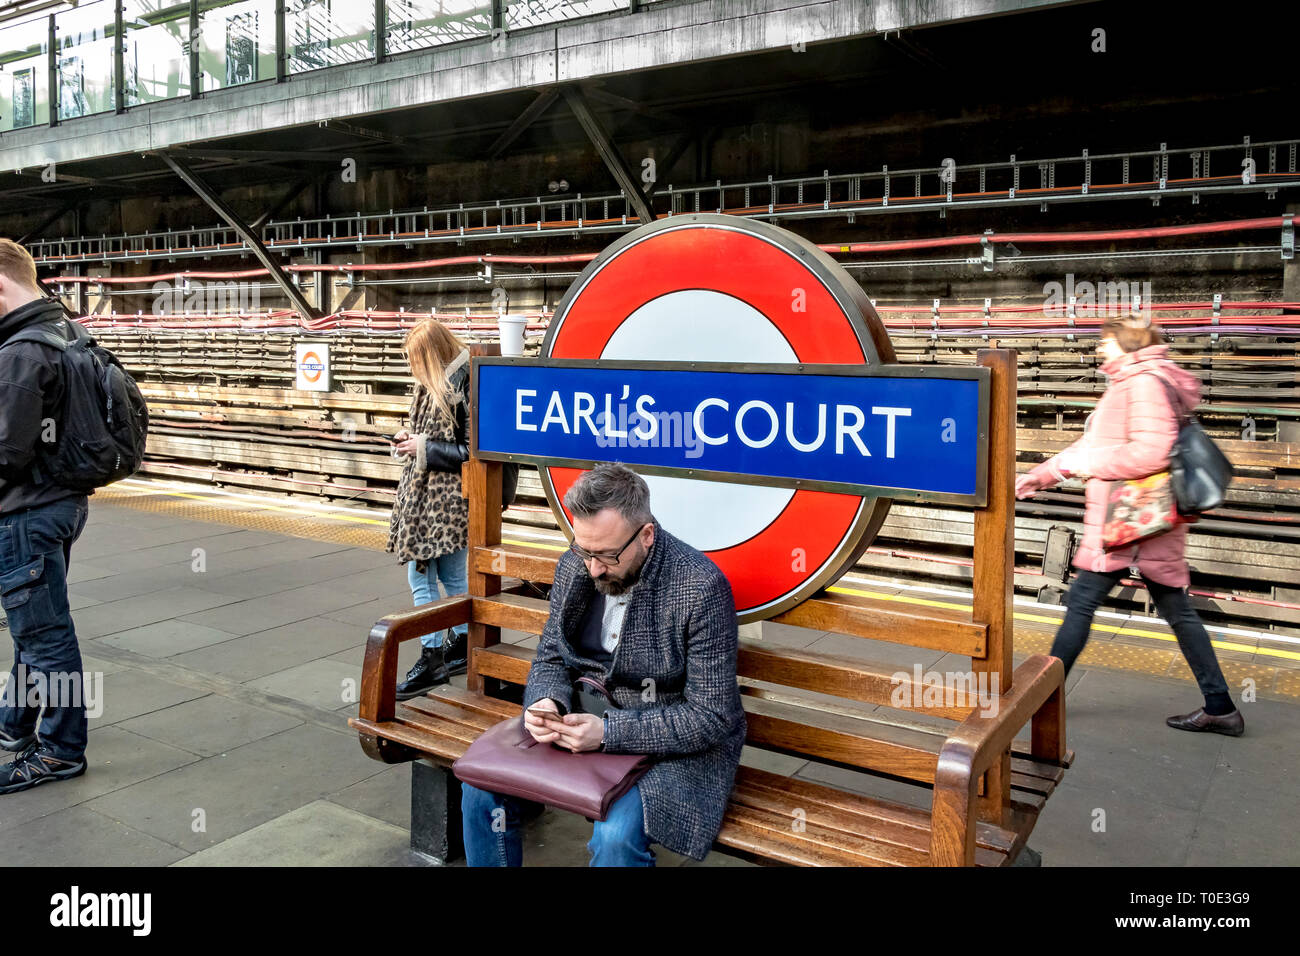 Un homme assis sur un banc à la station de métro Earls court, Londres, Royaume-Uni Banque D'Images